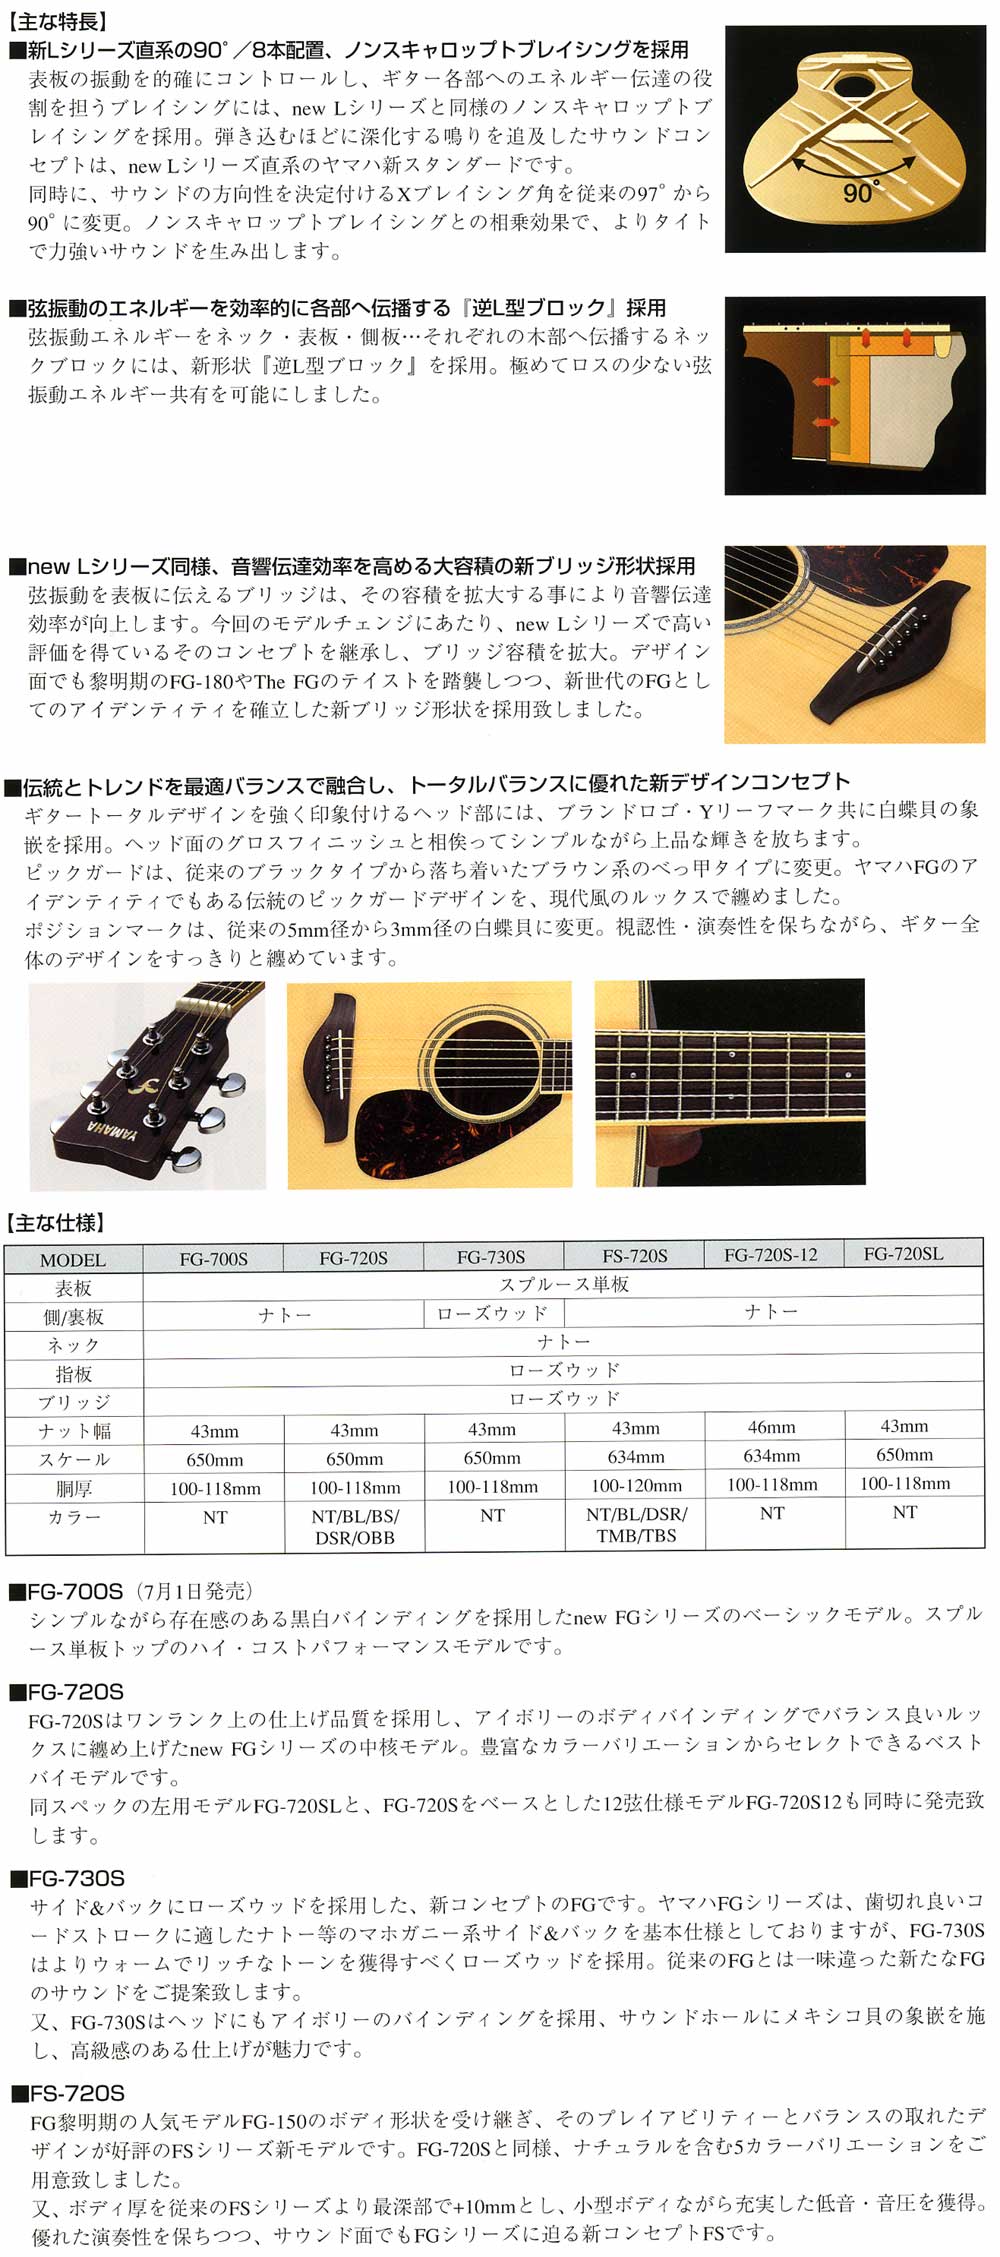 ヤマハアコースティックギター★FG、FSシリーズ★販売【ガッキコム】